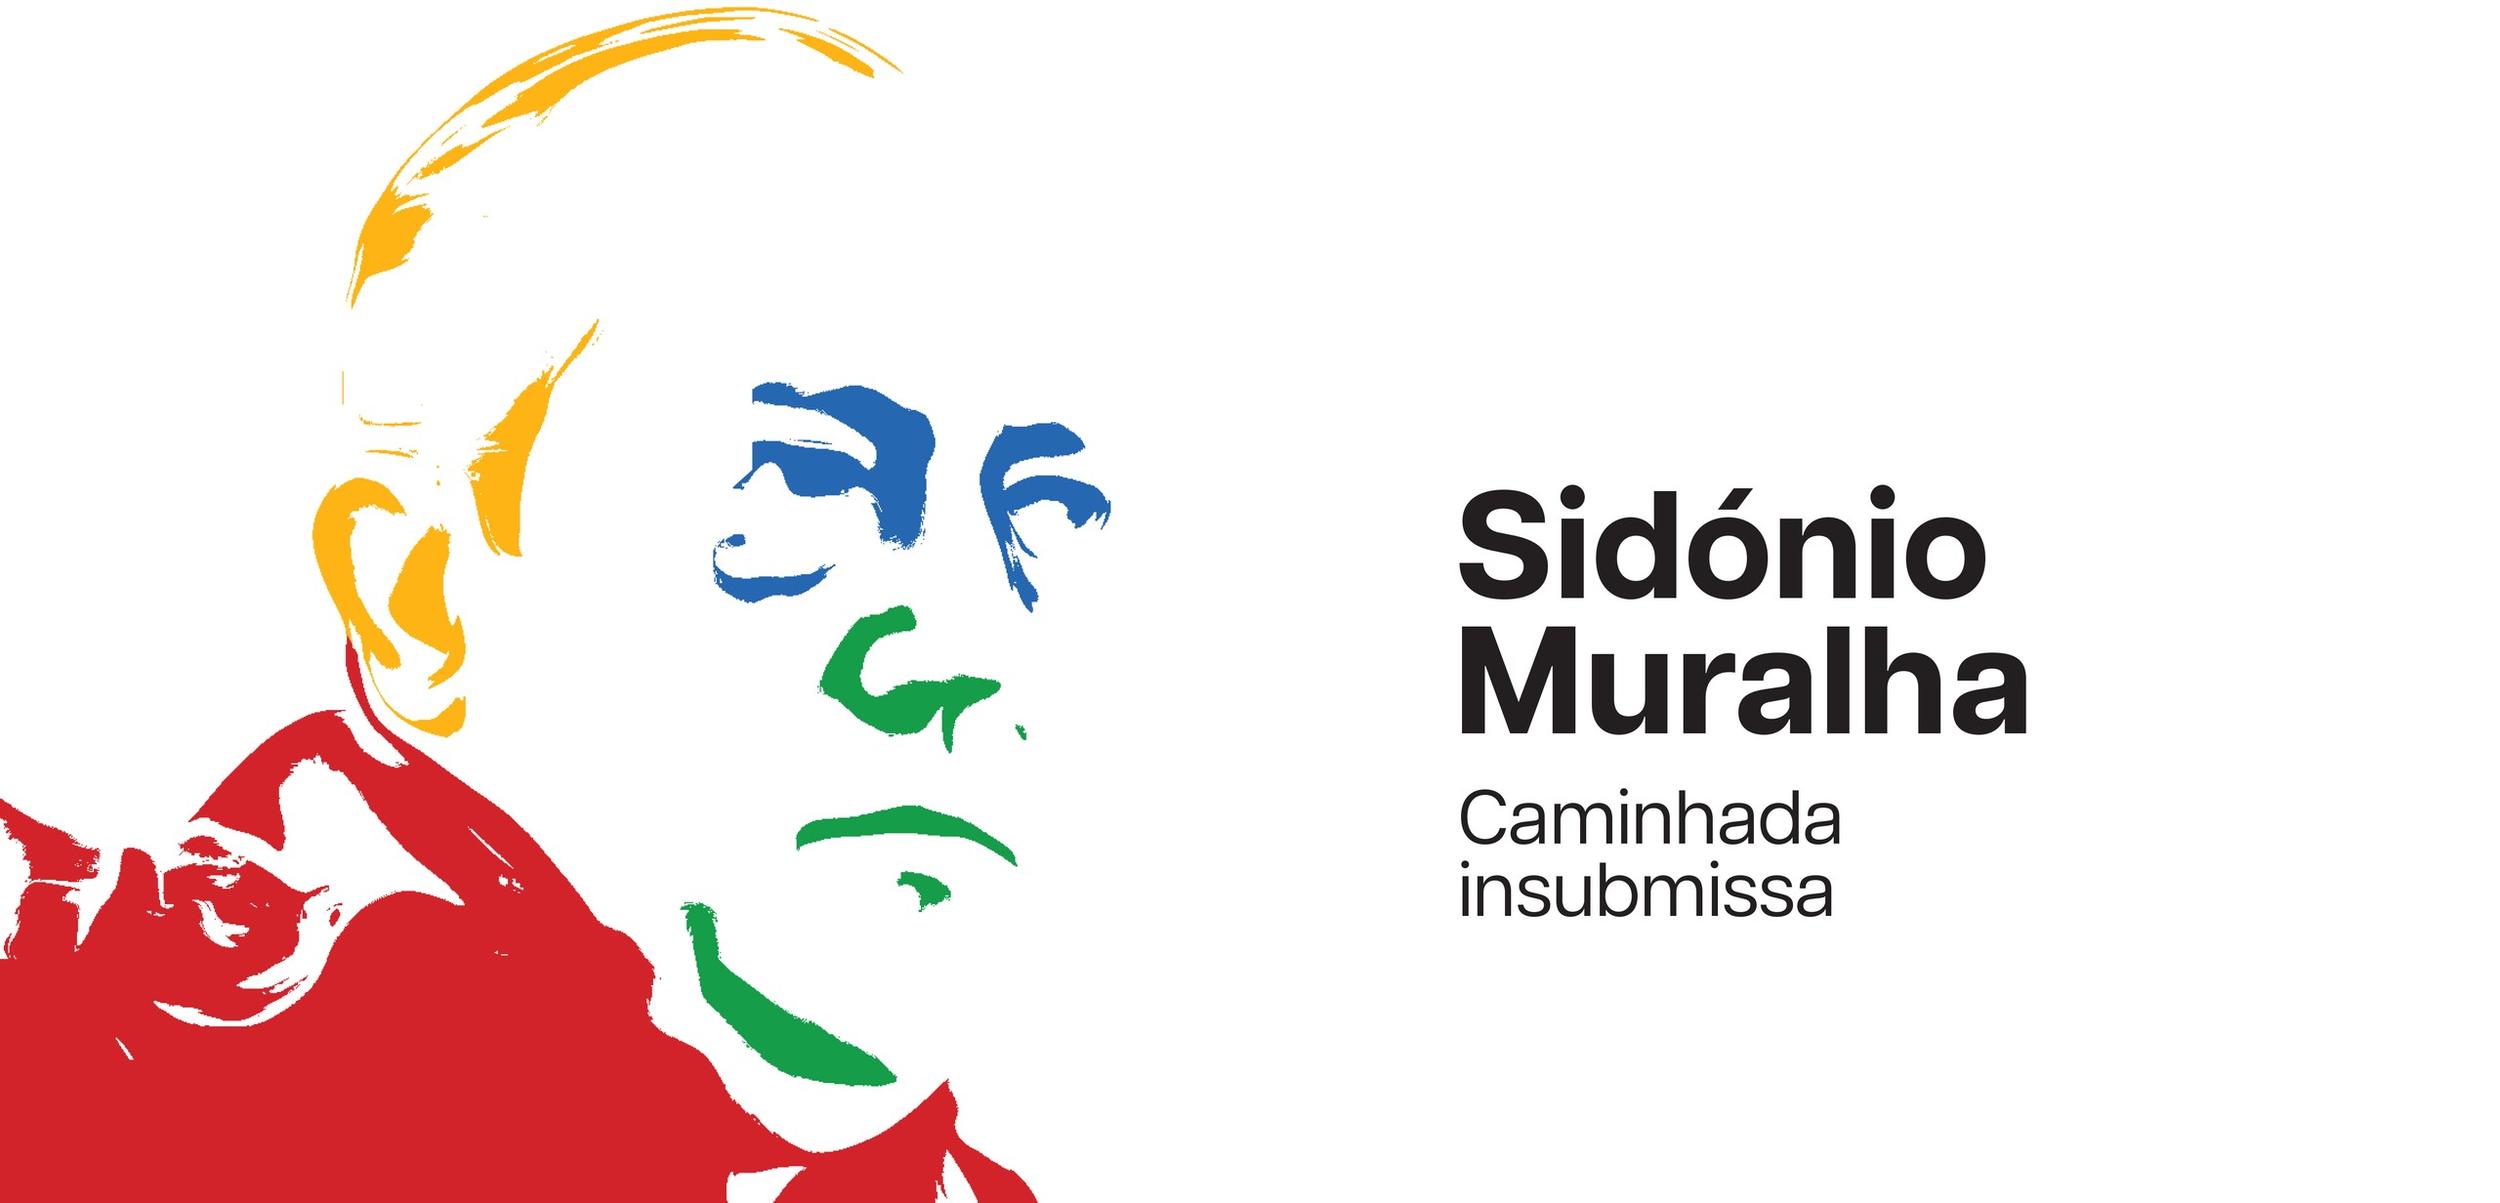 Museu do Neo-Realismo dedica exposição à vida e obra de Sidónio Muralha